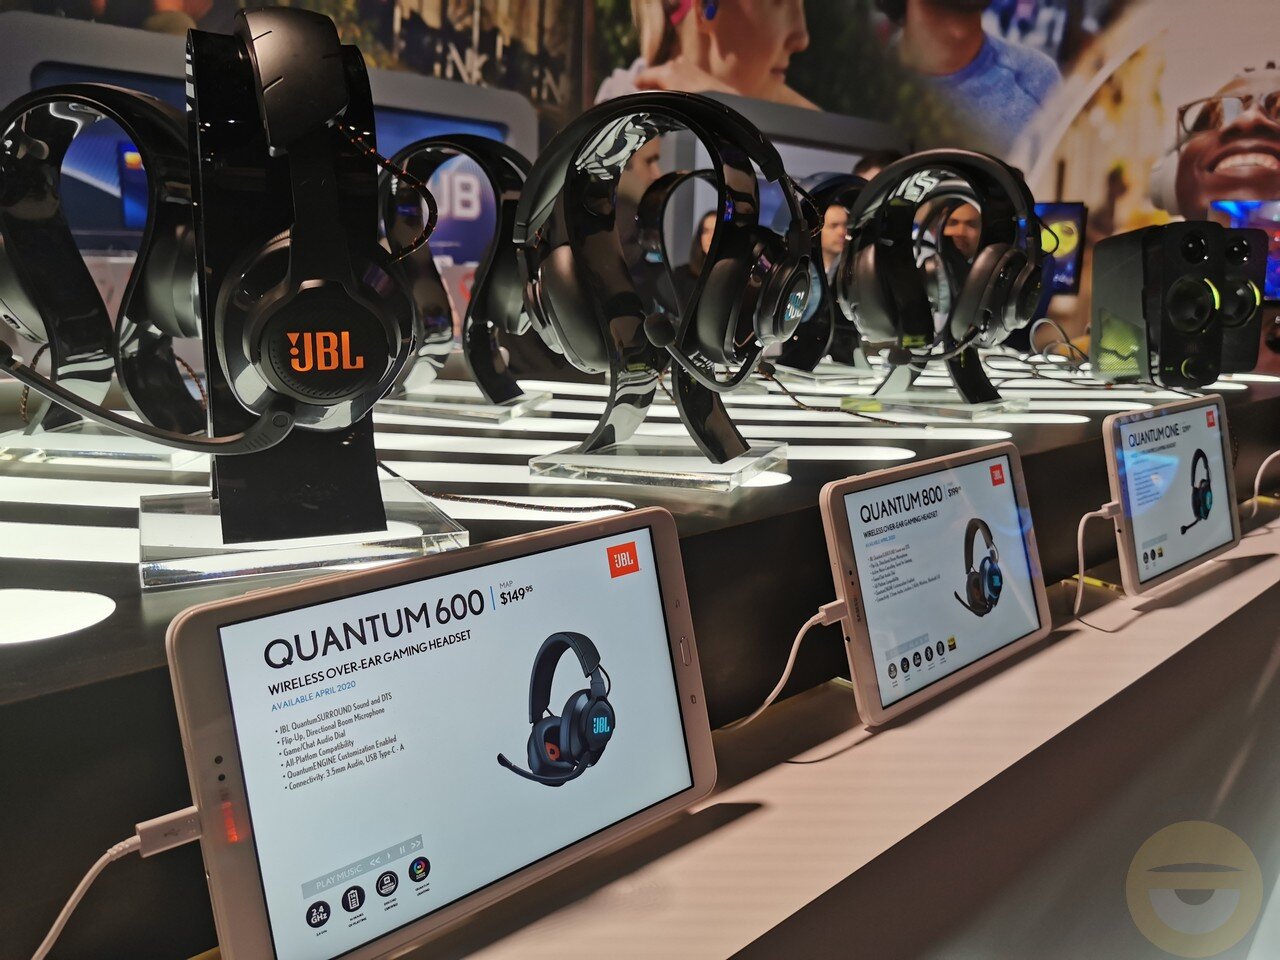 Η JBL παρουσίασε τη σειρά ακουστικών Quantum για gamers